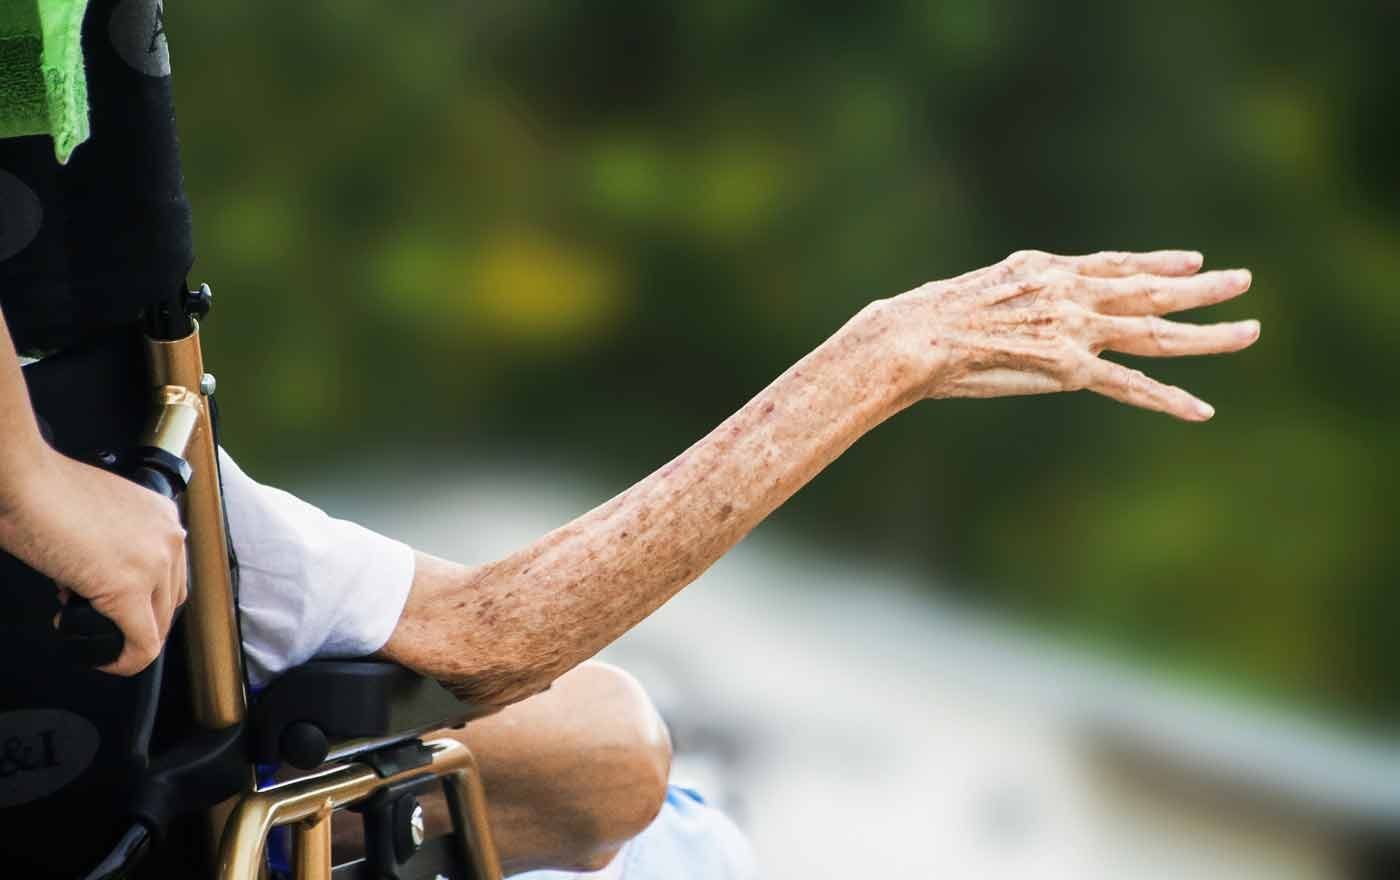 Das Projekt zur Hospizbegleitung von Menschen mit Behinderung ist das erste entsprechende Fortbildungsangebot für ehrenamtliche Hospizbegleiterinnen und -begleiter in Österreich. Foto: pixabay/truthseeker08